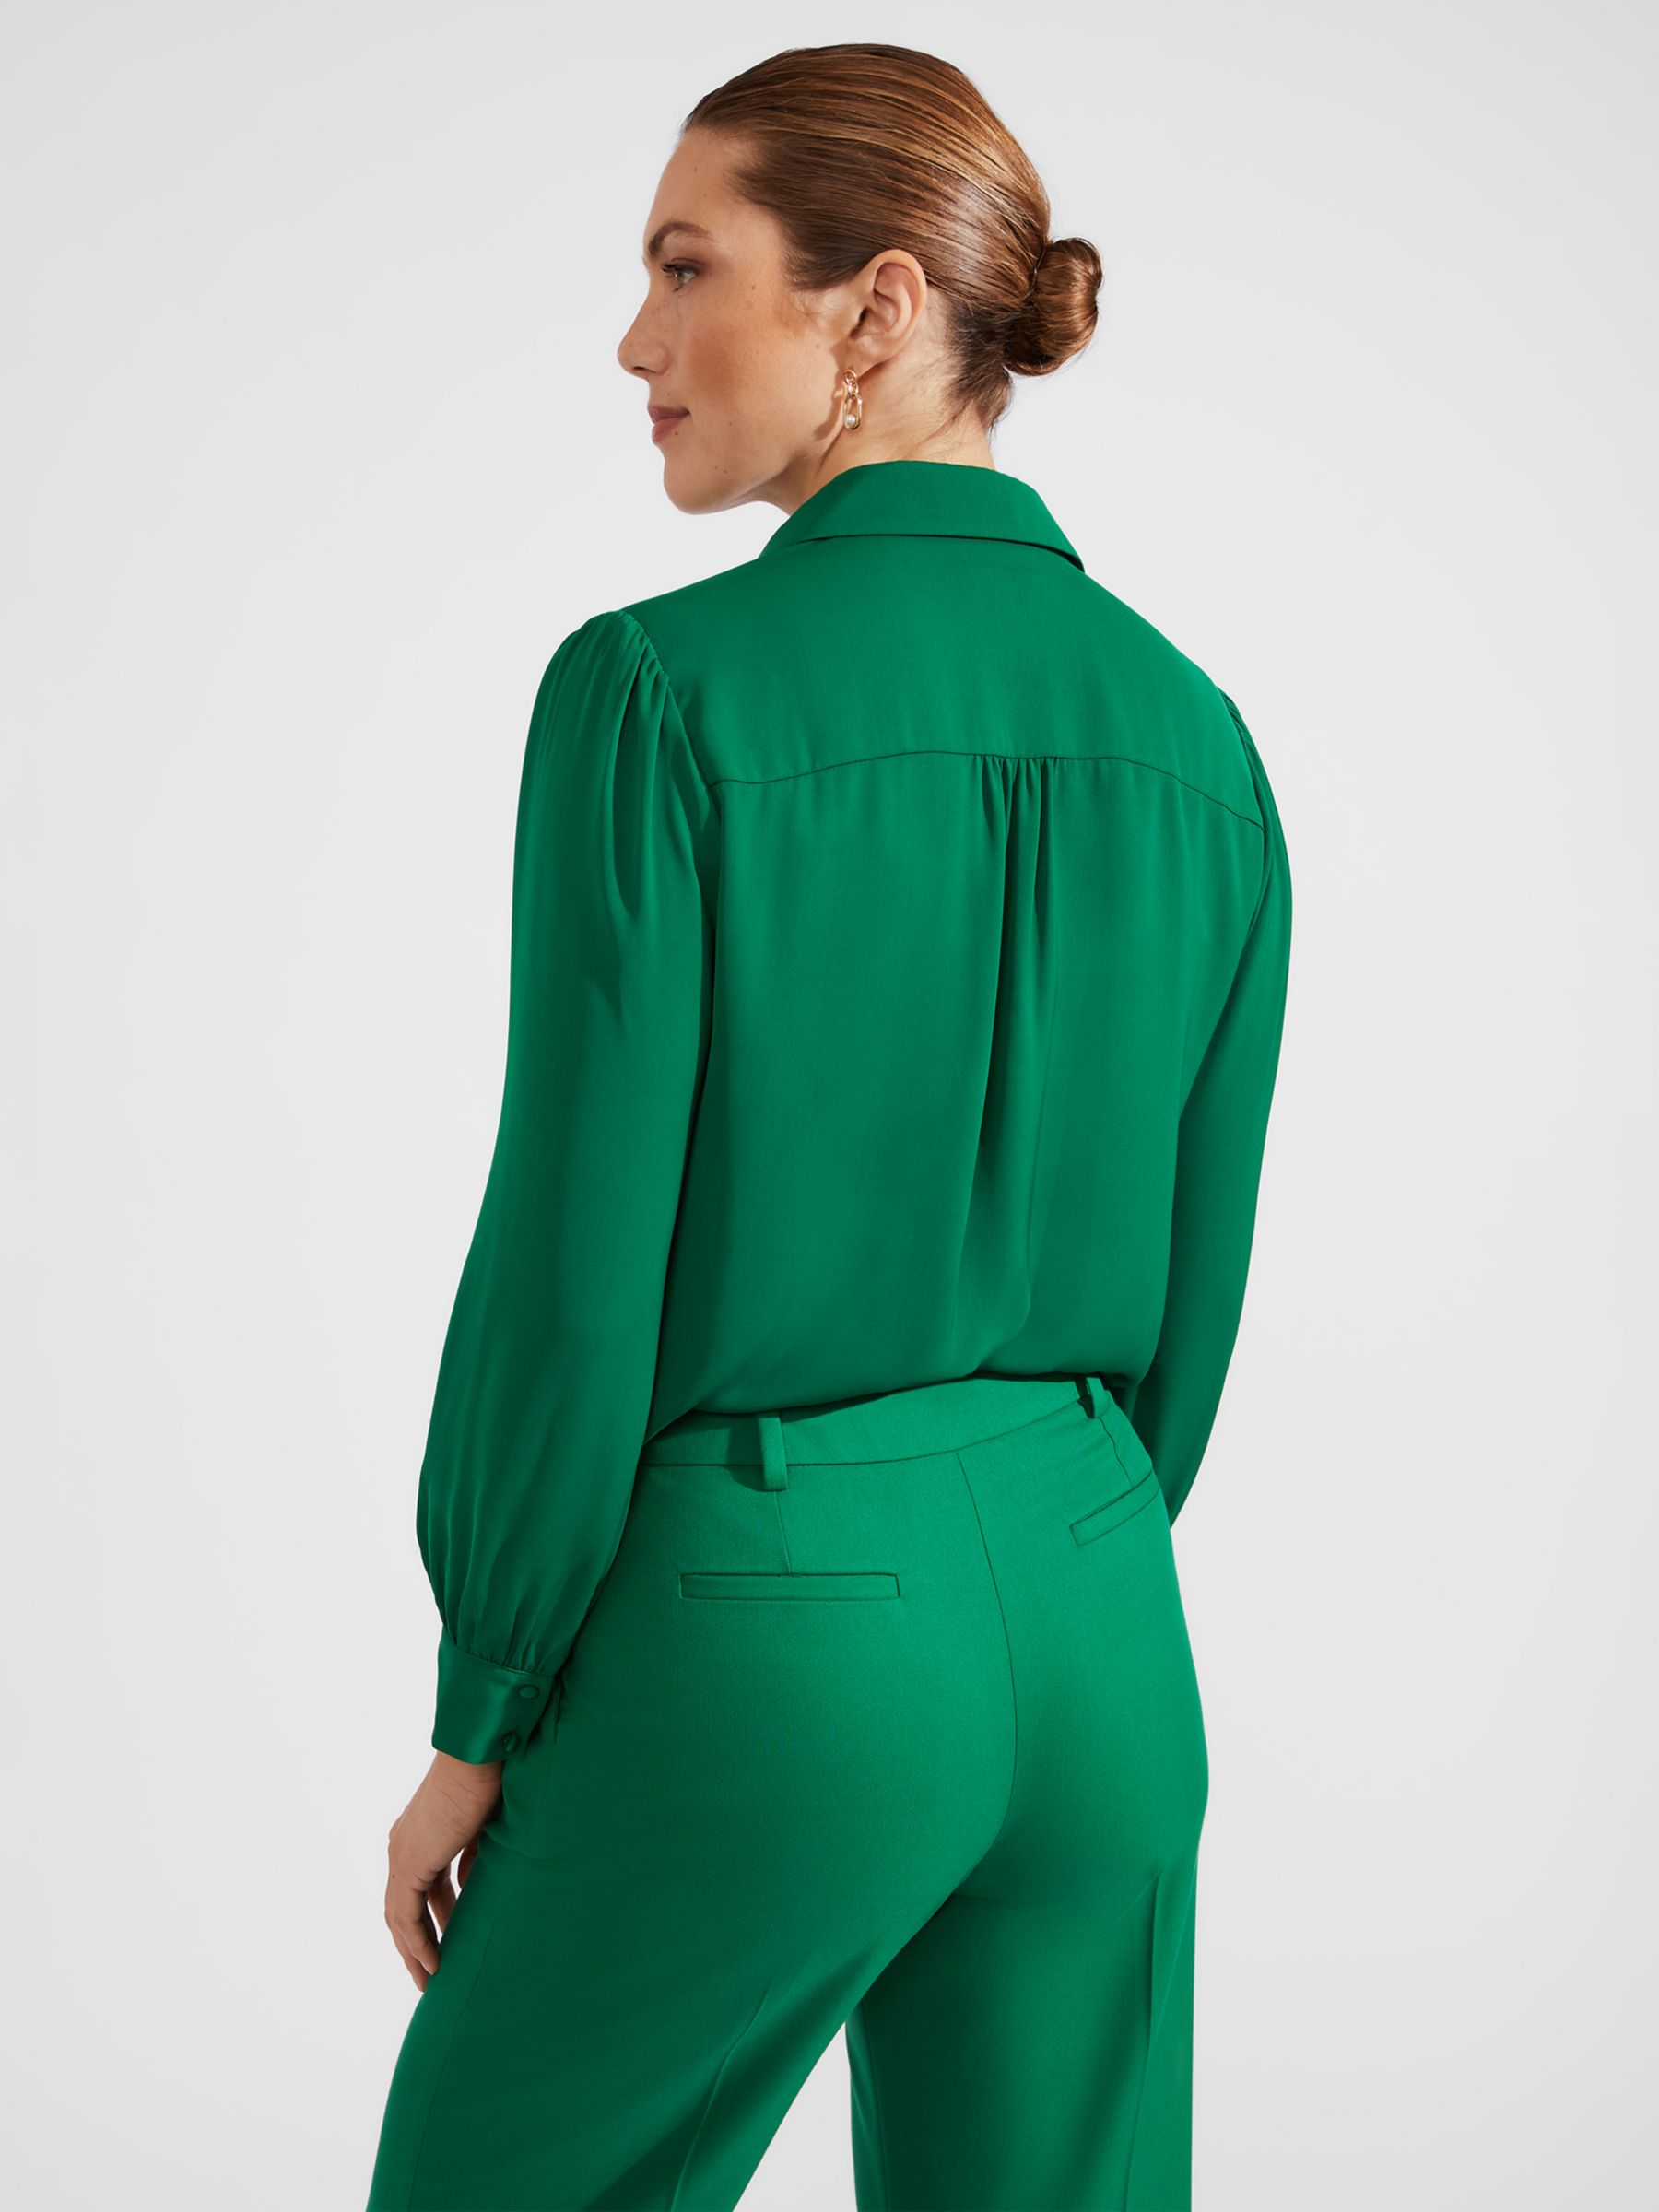 Hobbs Caitlyn Chiffon Shirt, Green, 10